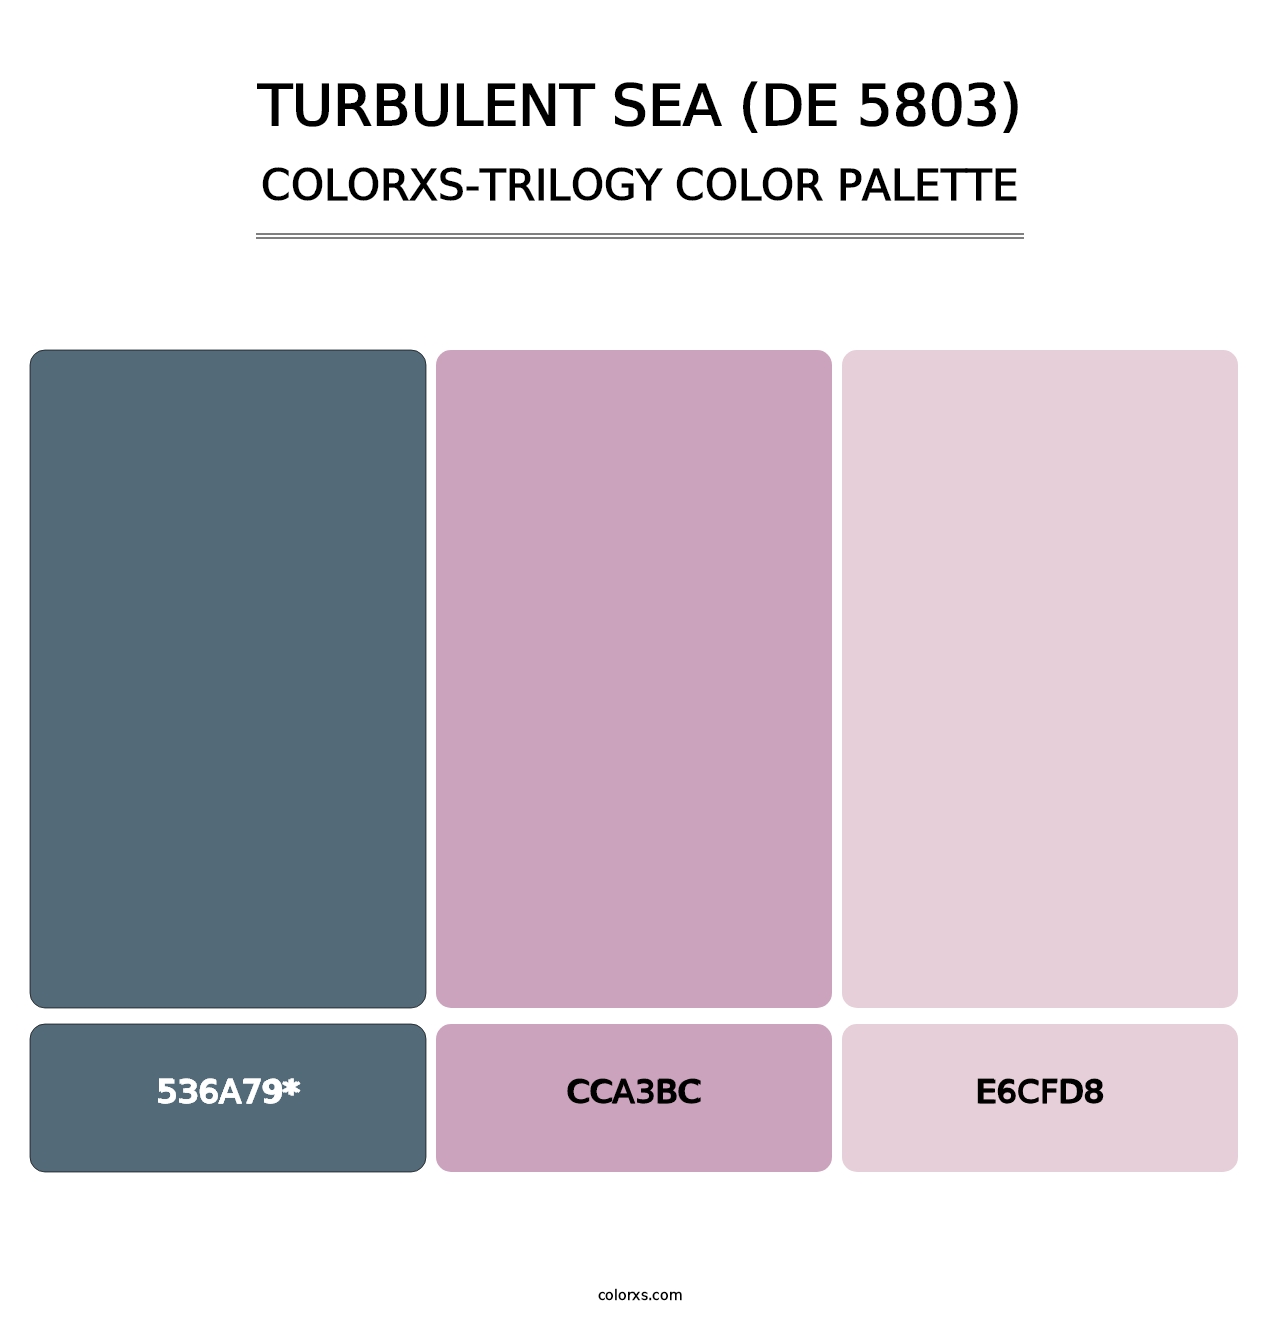 Turbulent Sea (DE 5803) - Colorxs Trilogy Palette